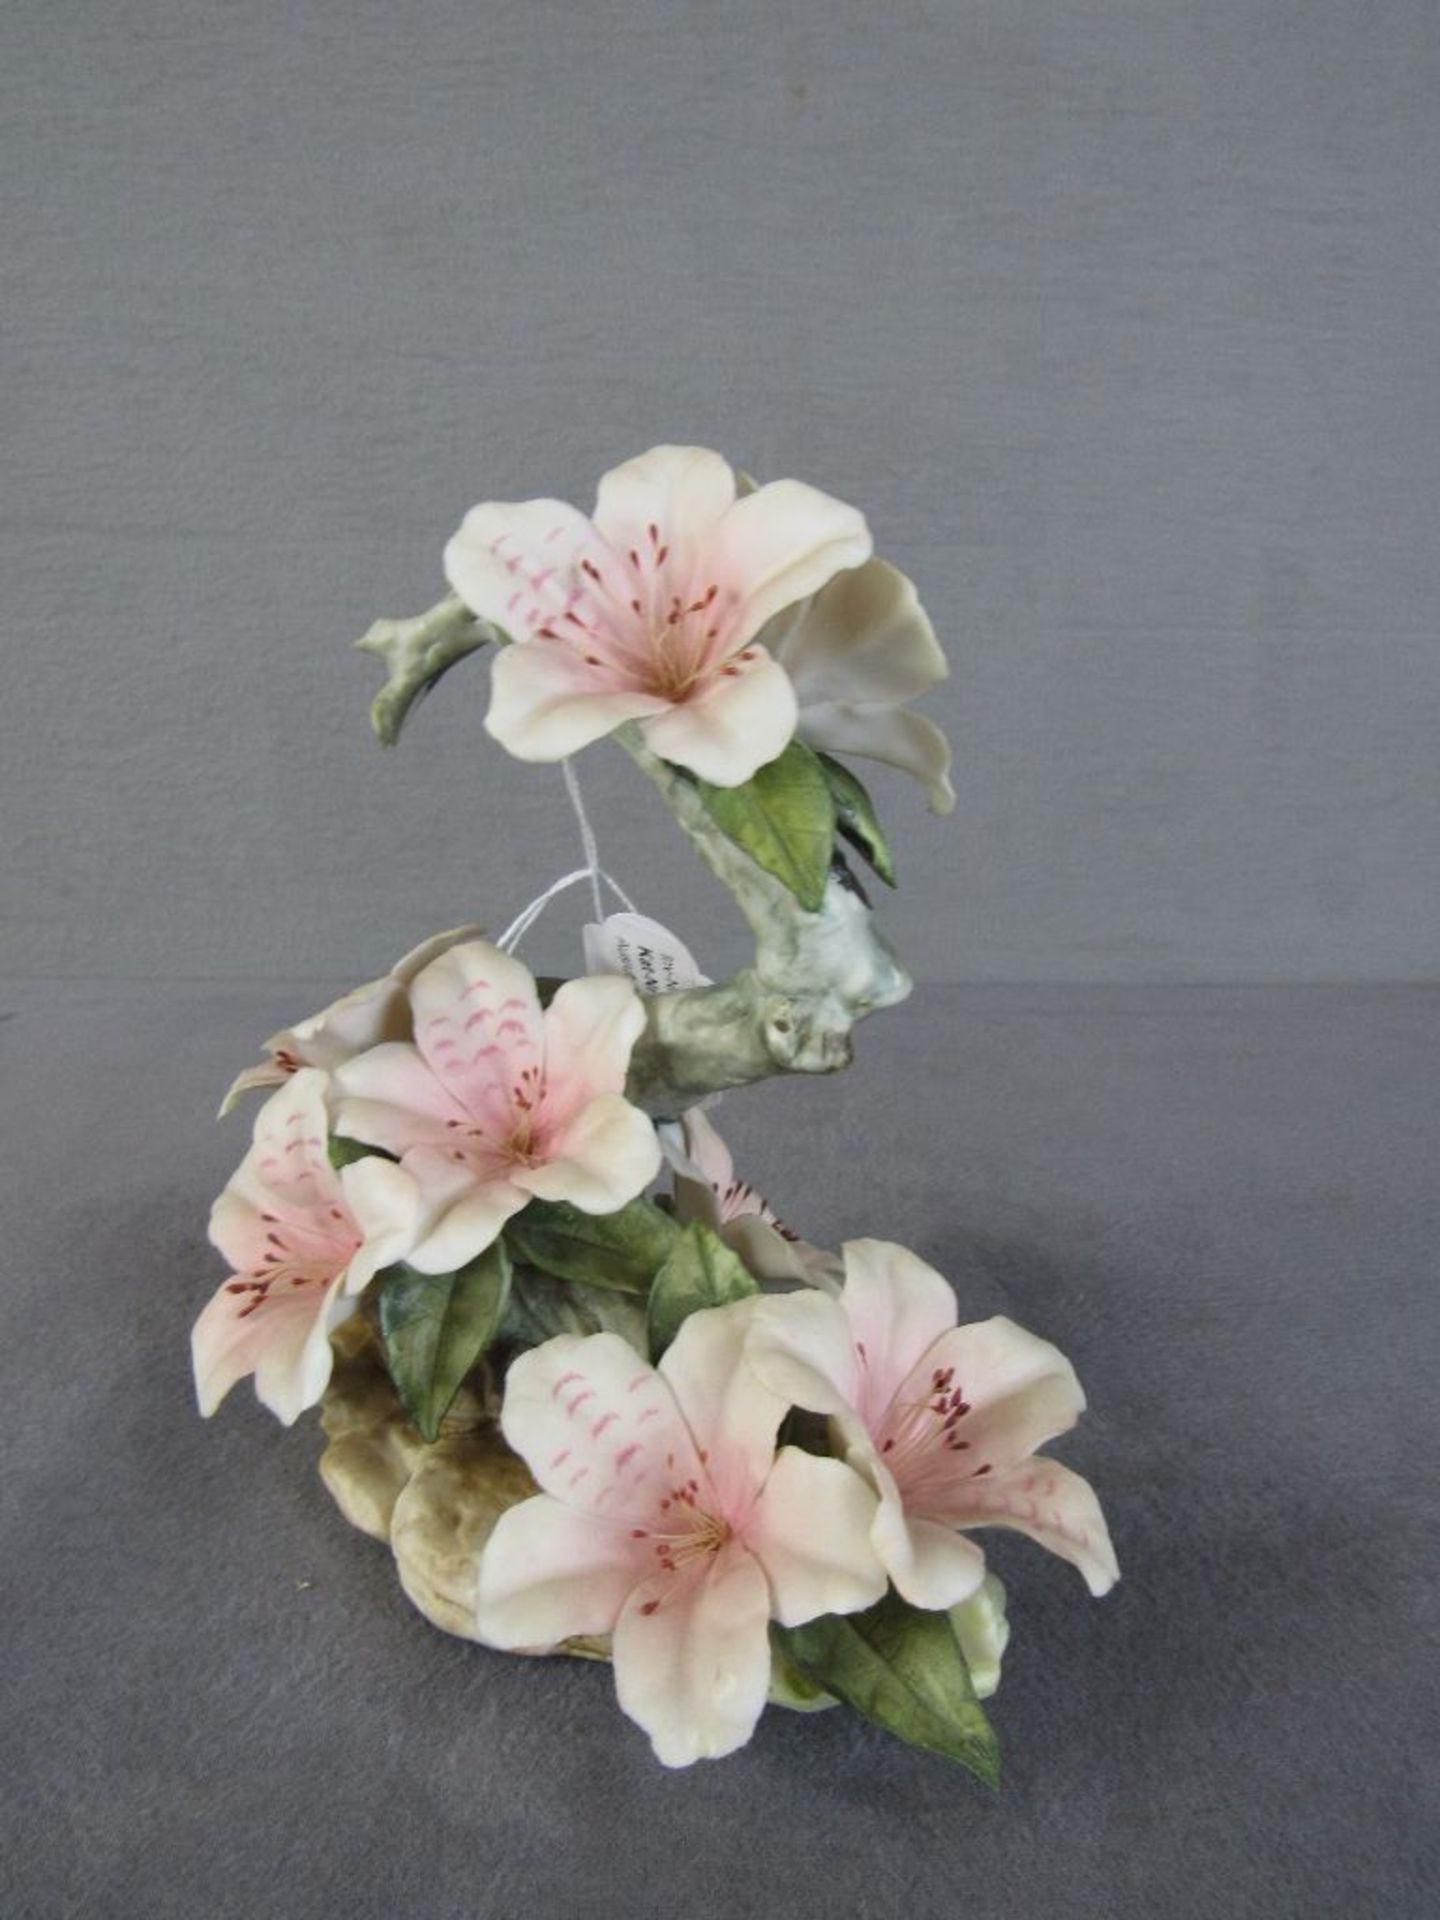 Skulptur Blume sehr deteil getreu gearbeitet Bisquitporzellan minimale Beschädigungen können - Bild 2 aus 4